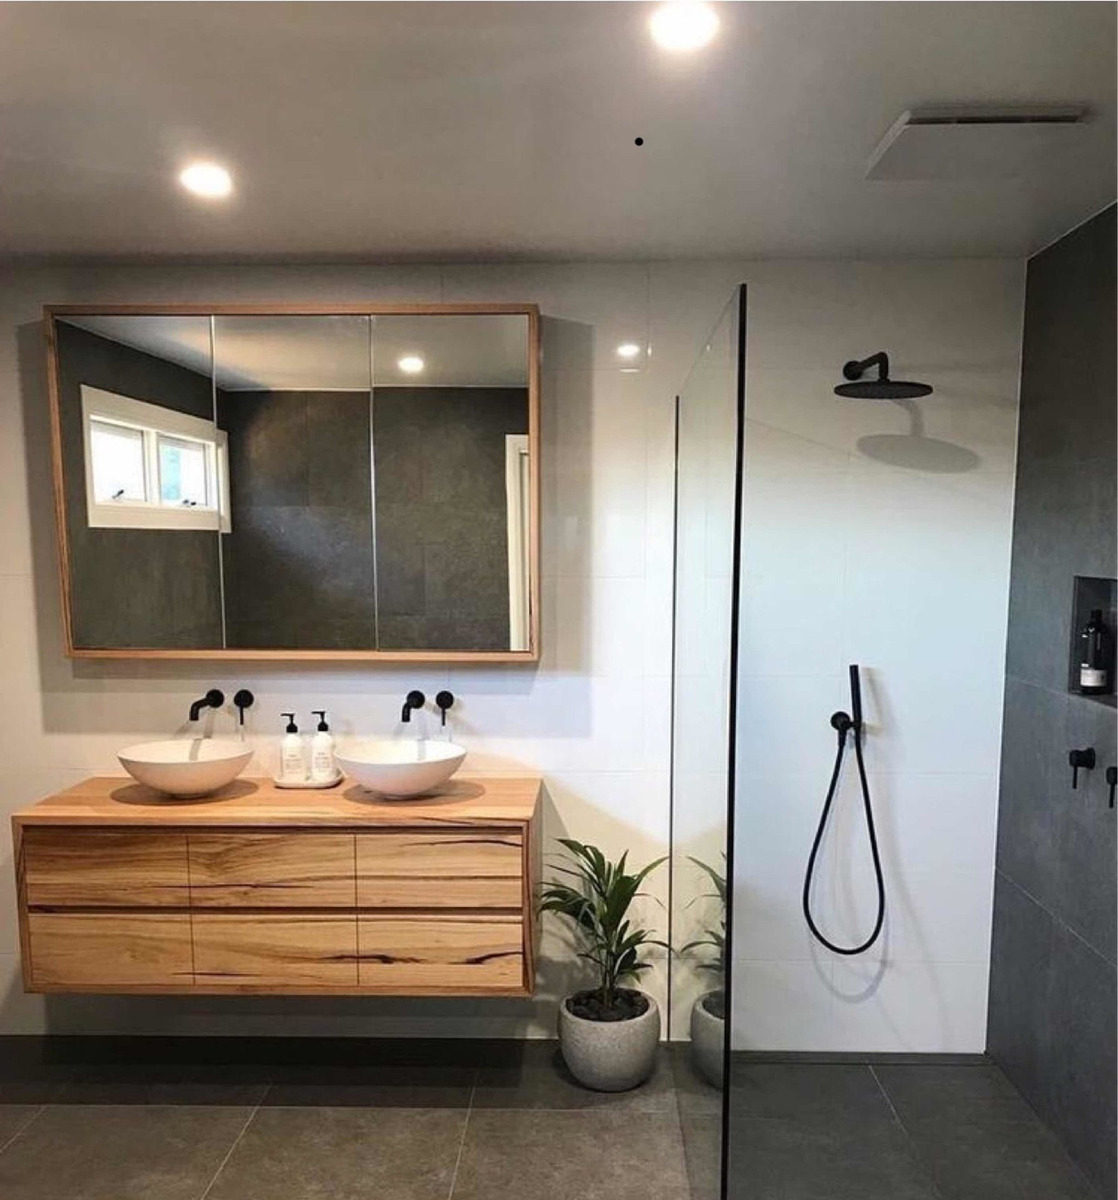 Botiquín Espejo Tríptico Para Baño En Paraíso Lustrado | Dilaxe muebles